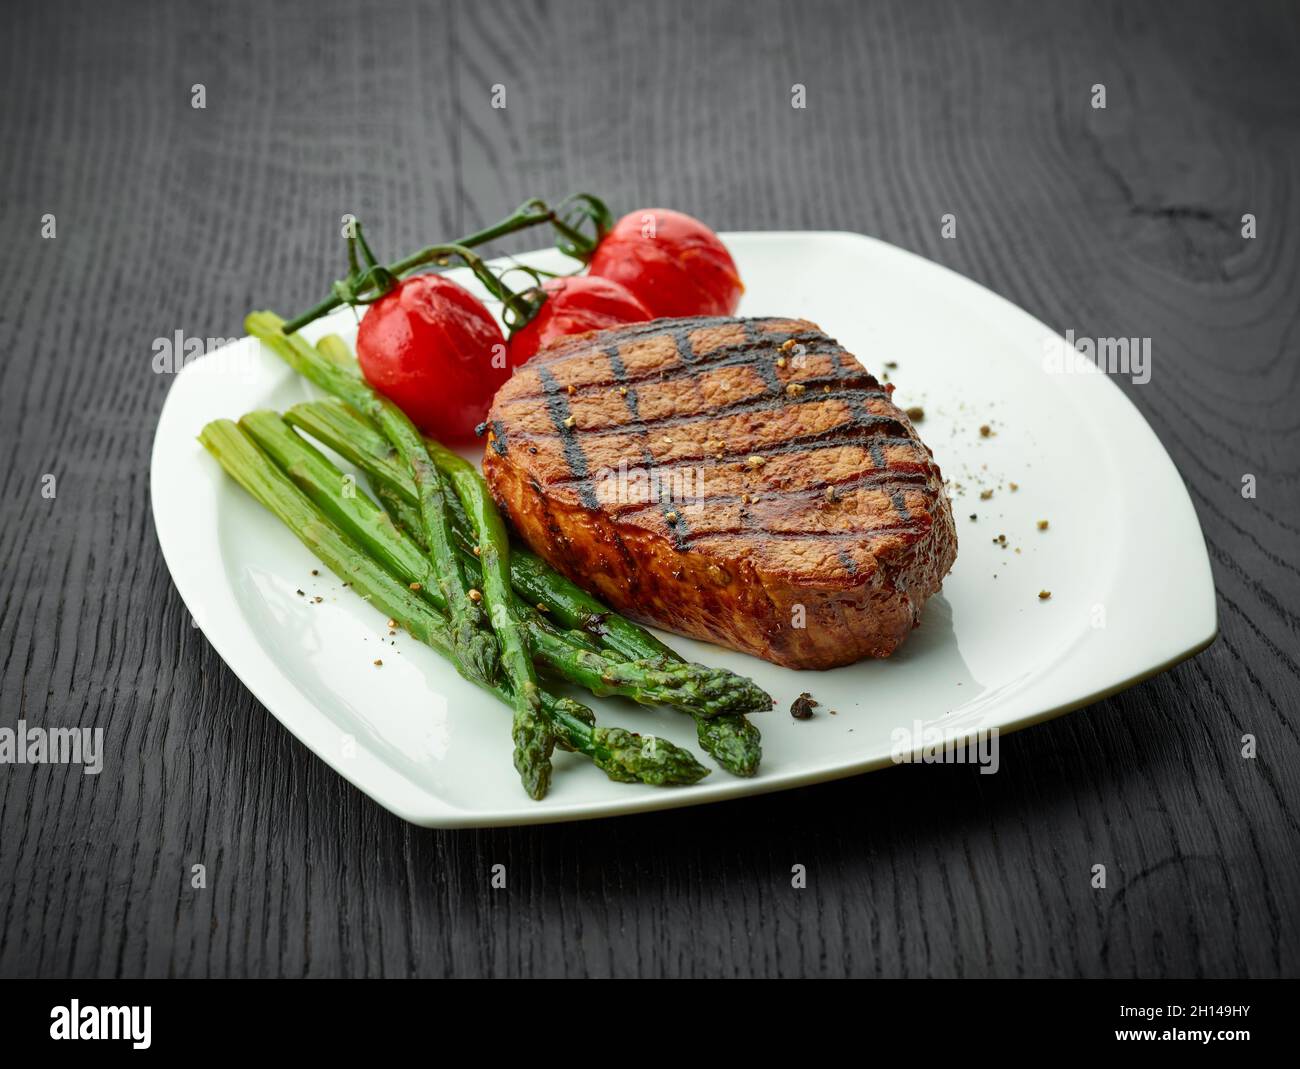 Steak de veau fraîchement cuit, tomates et asperges servis sur une assiette blanche Banque D'Images